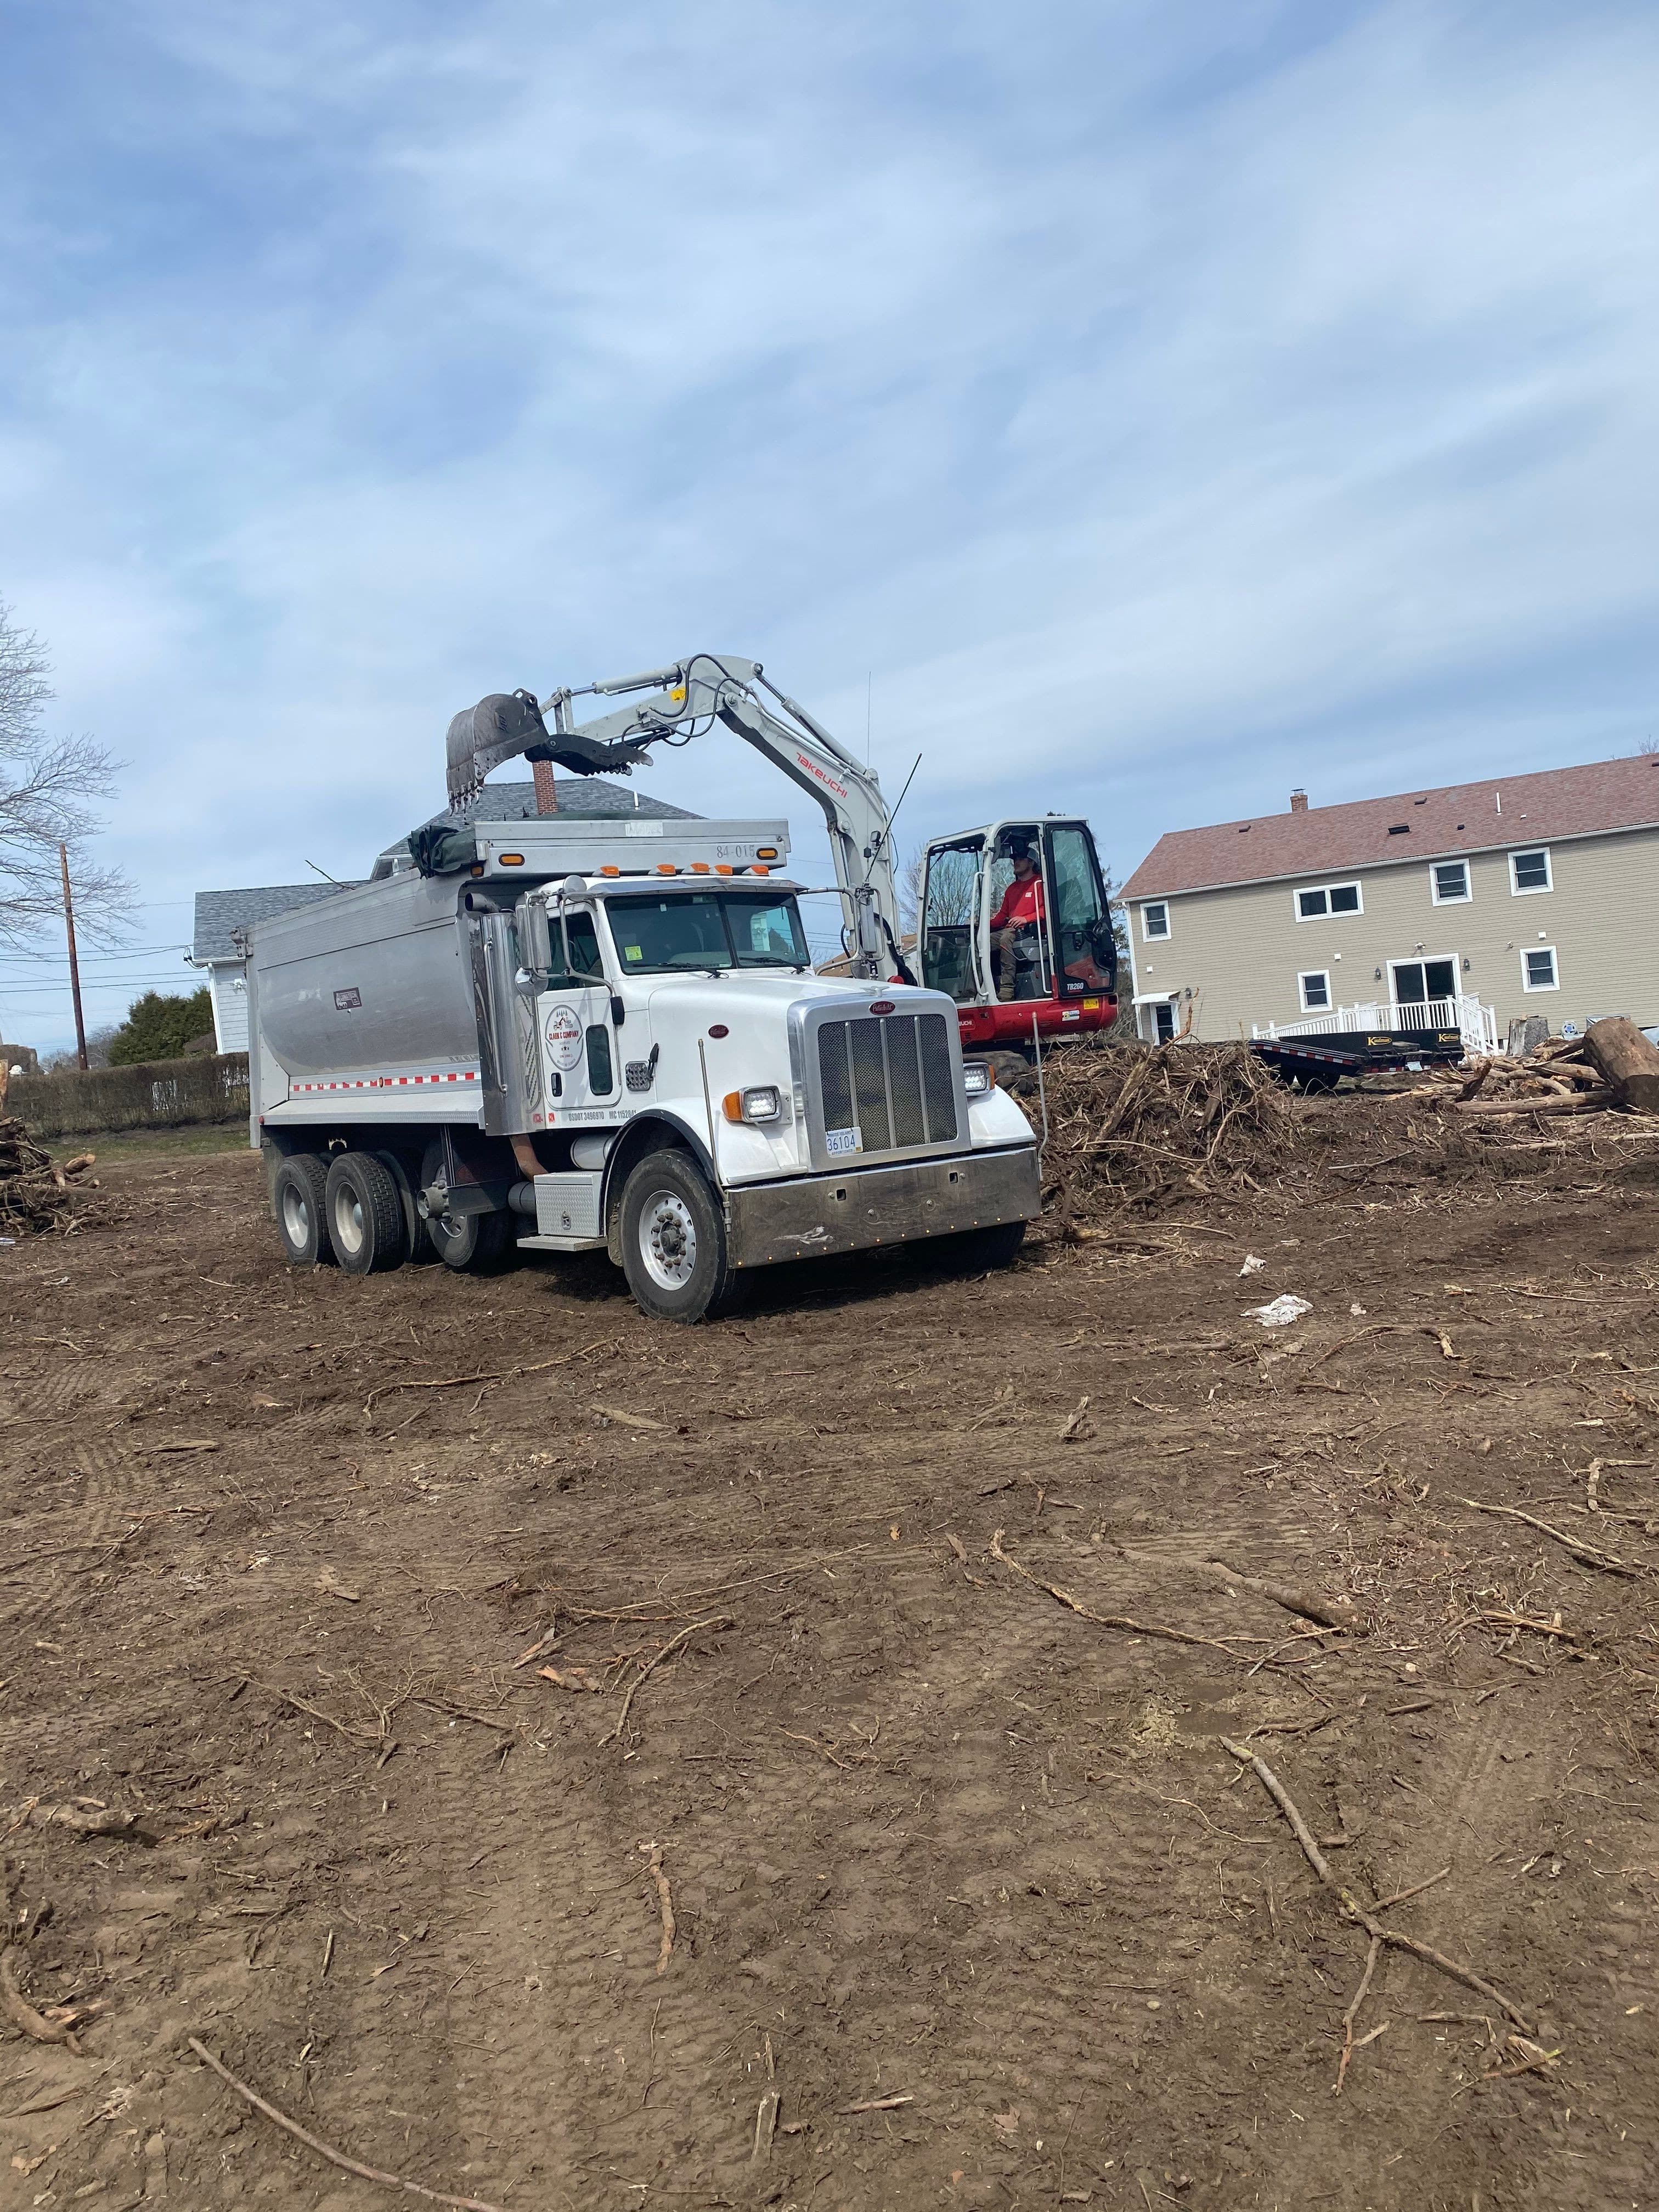 Clark and Company using our Tri-Axle dump truck to remove debris